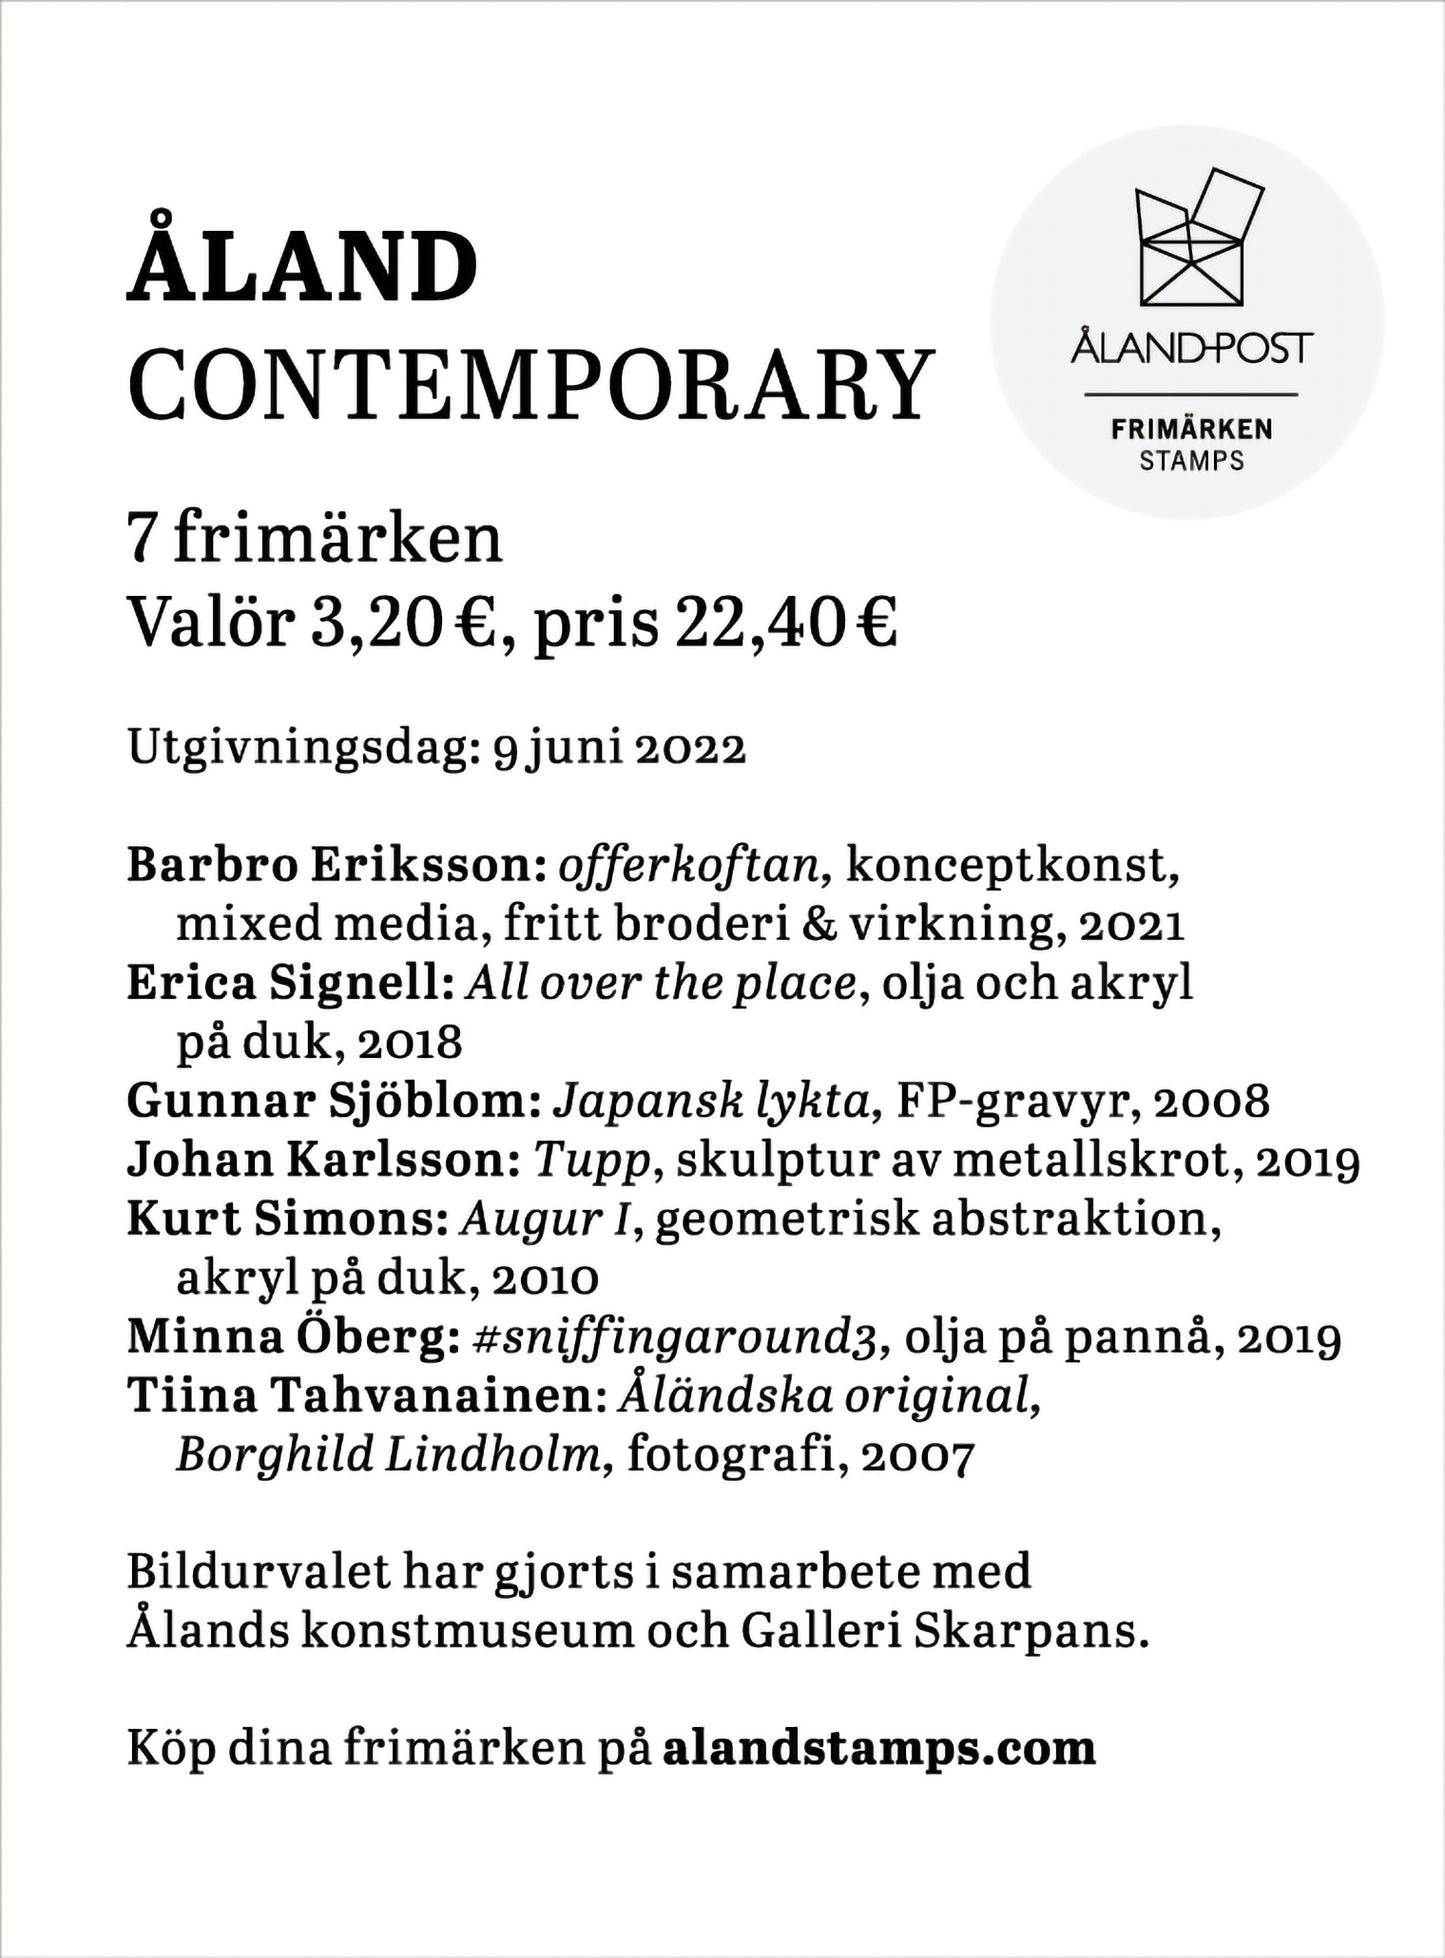 Åland contemporary - ostämplat